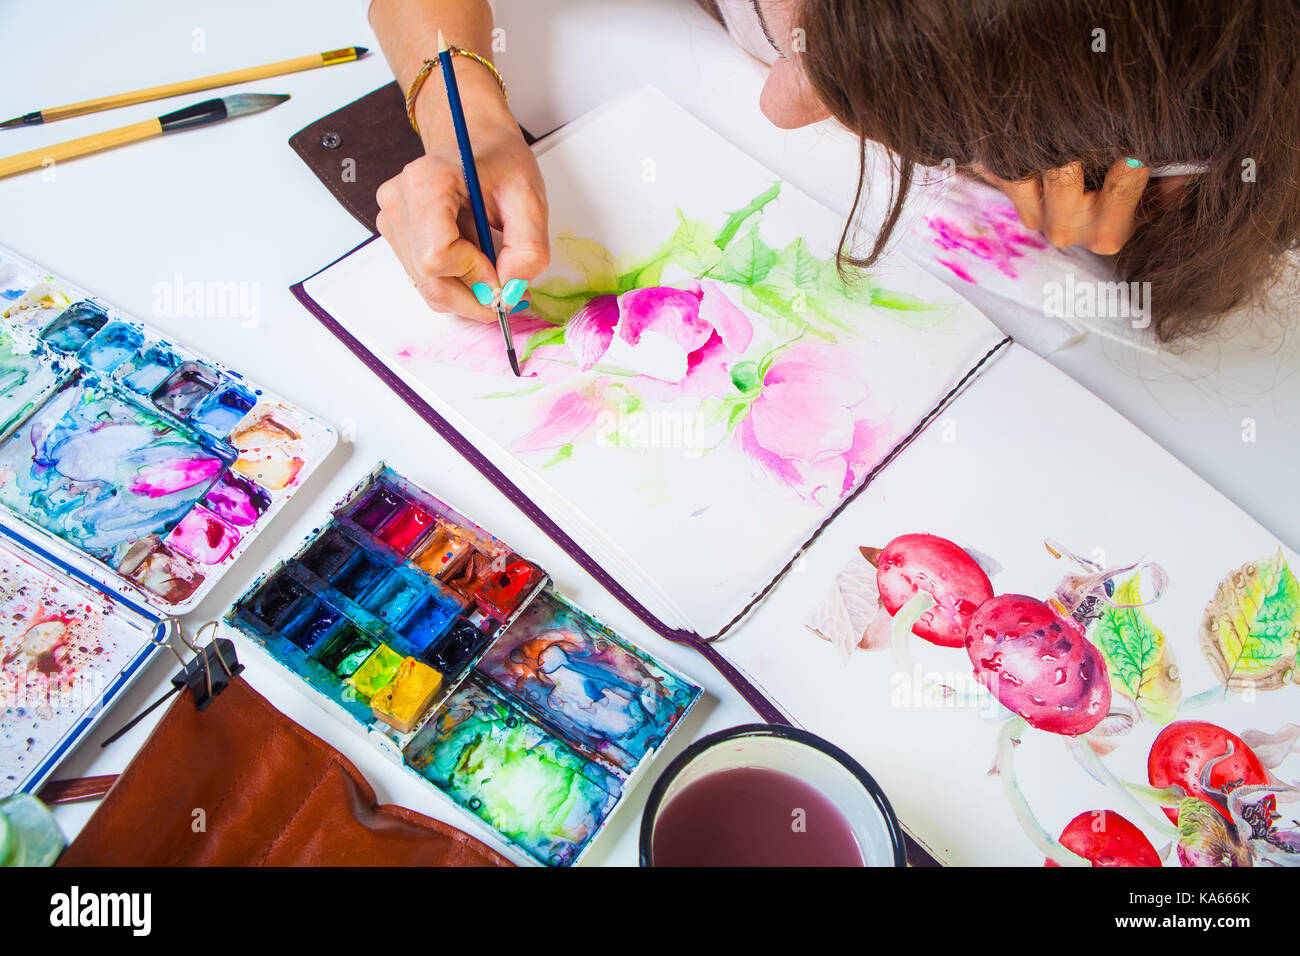 Un close-up artist pinta y dibuja en el álbum para dibujar un cepillo de  madera fina de color rosa con colores de acuarela, sobre la mesa es una  funda de cuero con